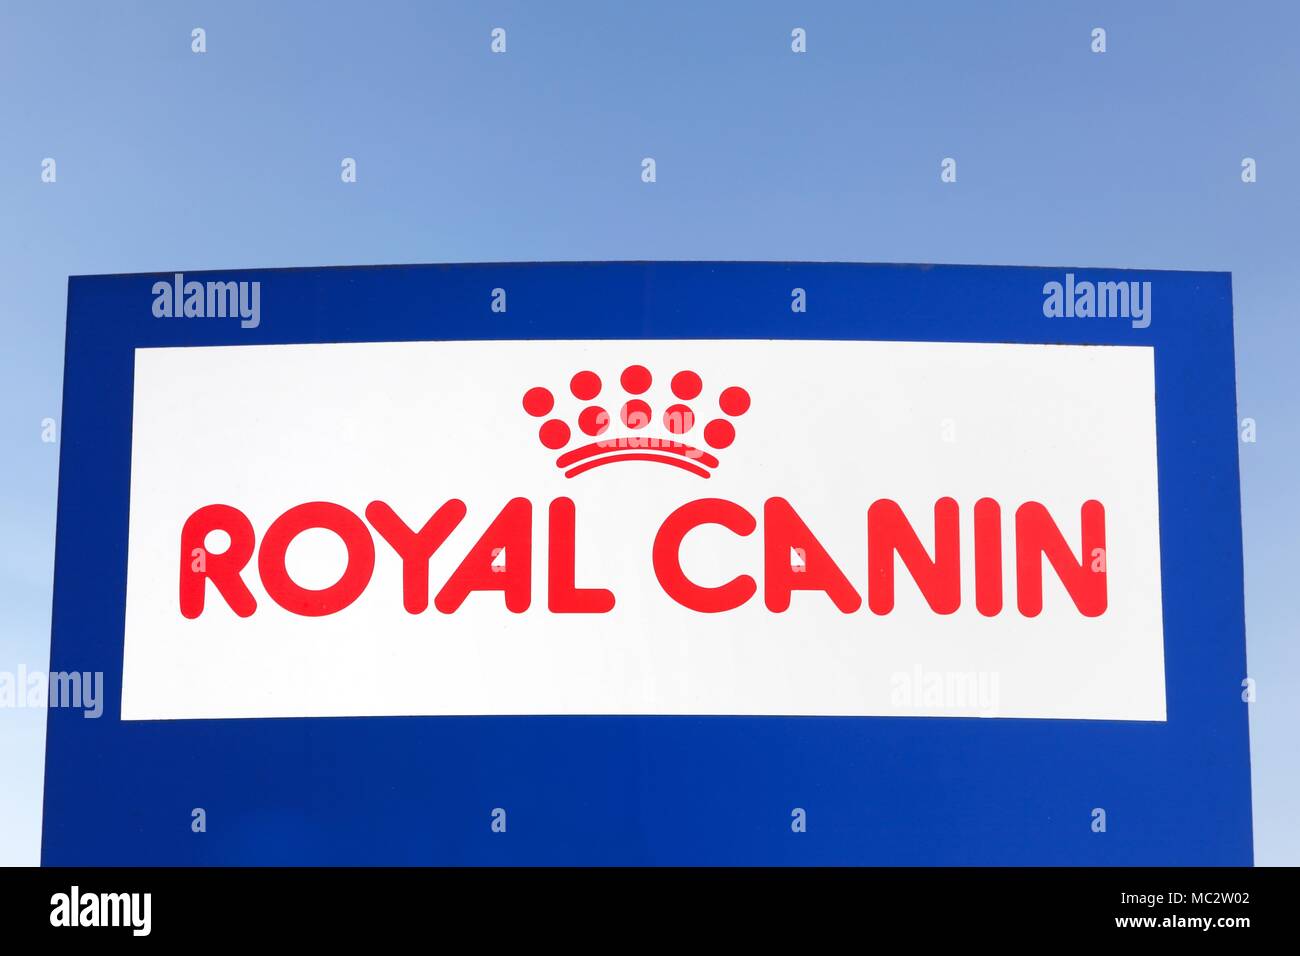 Marque Royale Canin Banque d'image et photos - Alamy